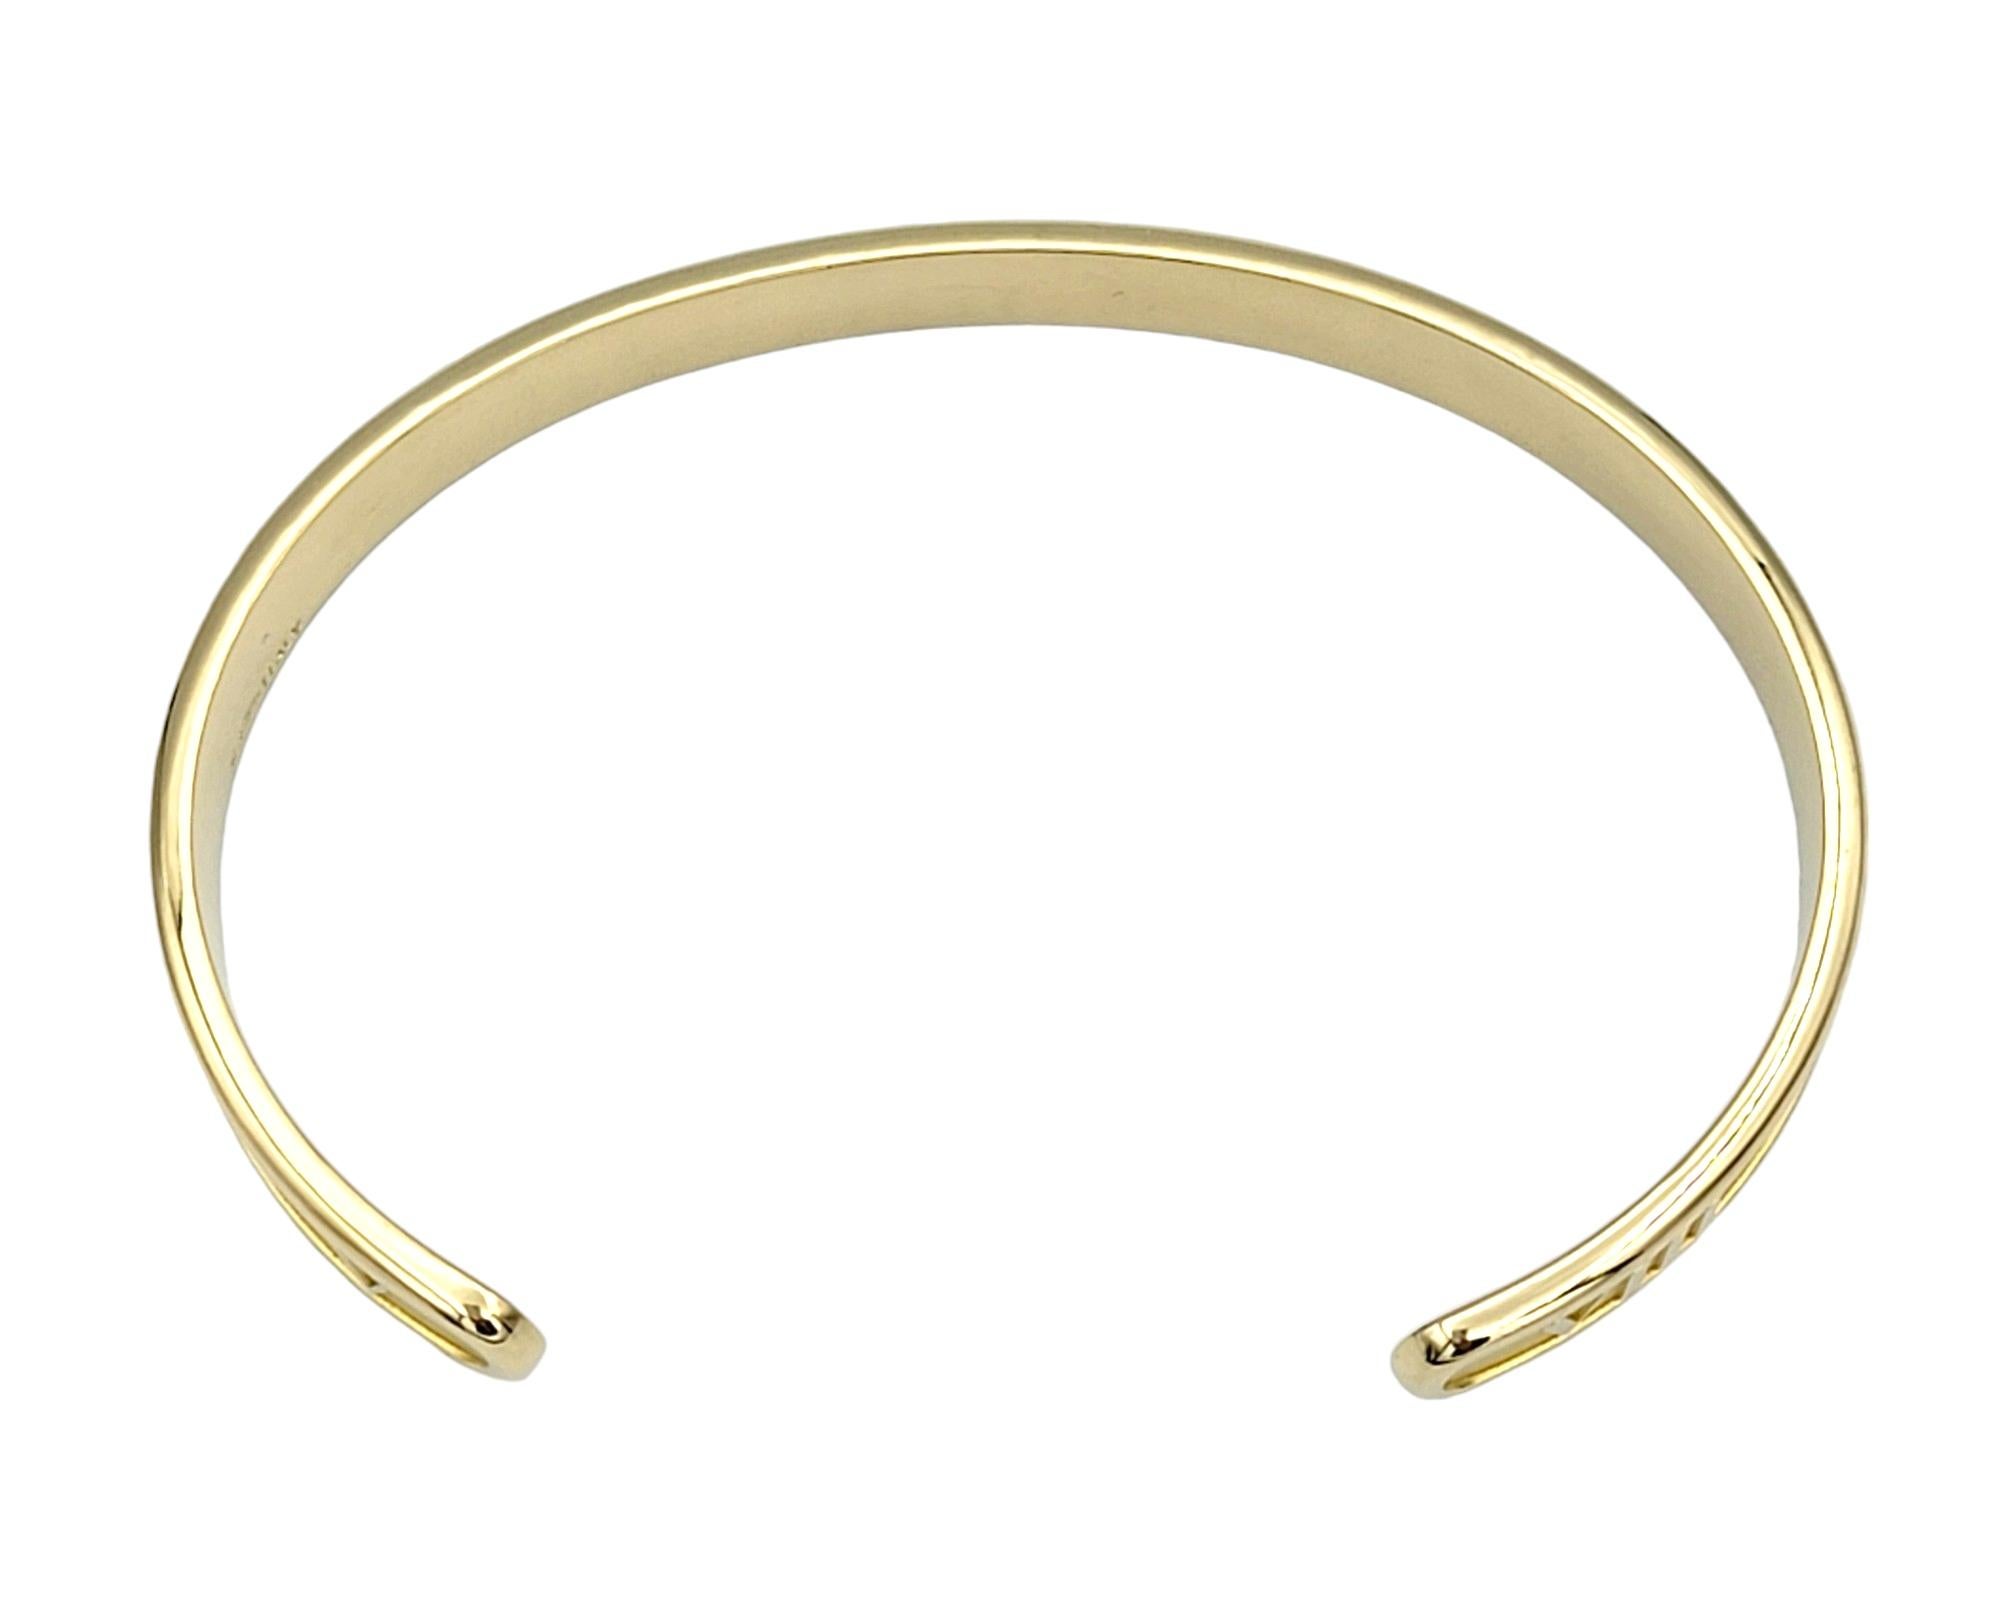 Tiffany & Co. Atlas Cuff Bracelet Set in 18 Karat Yellow Gold For Sale 2